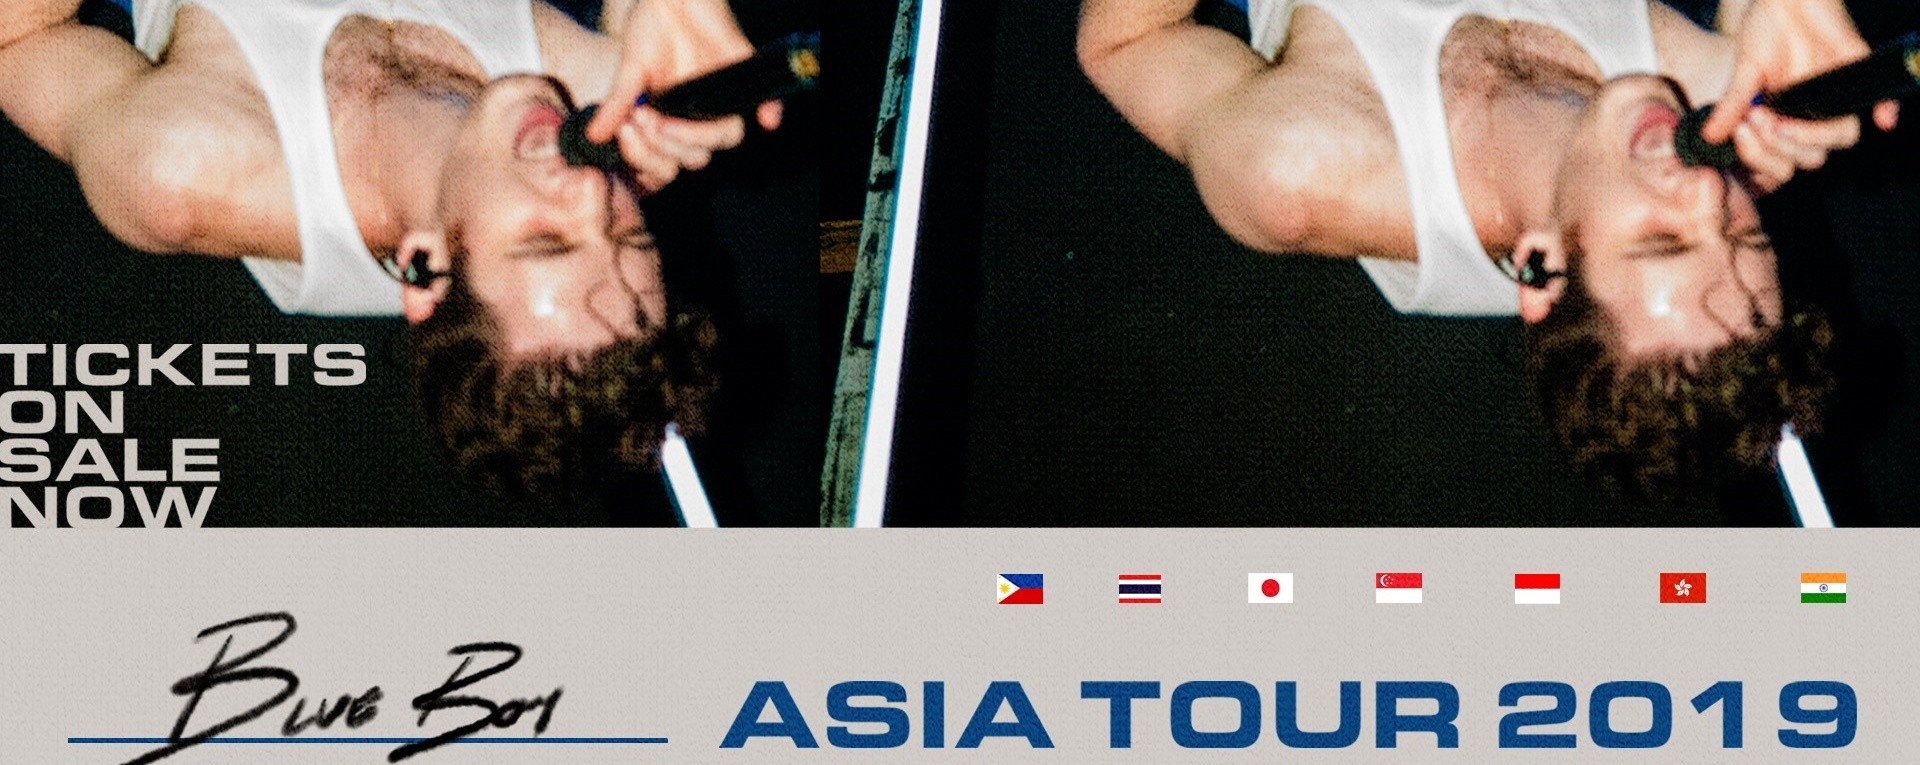 LAUV Asia Tour 2019 Singapore